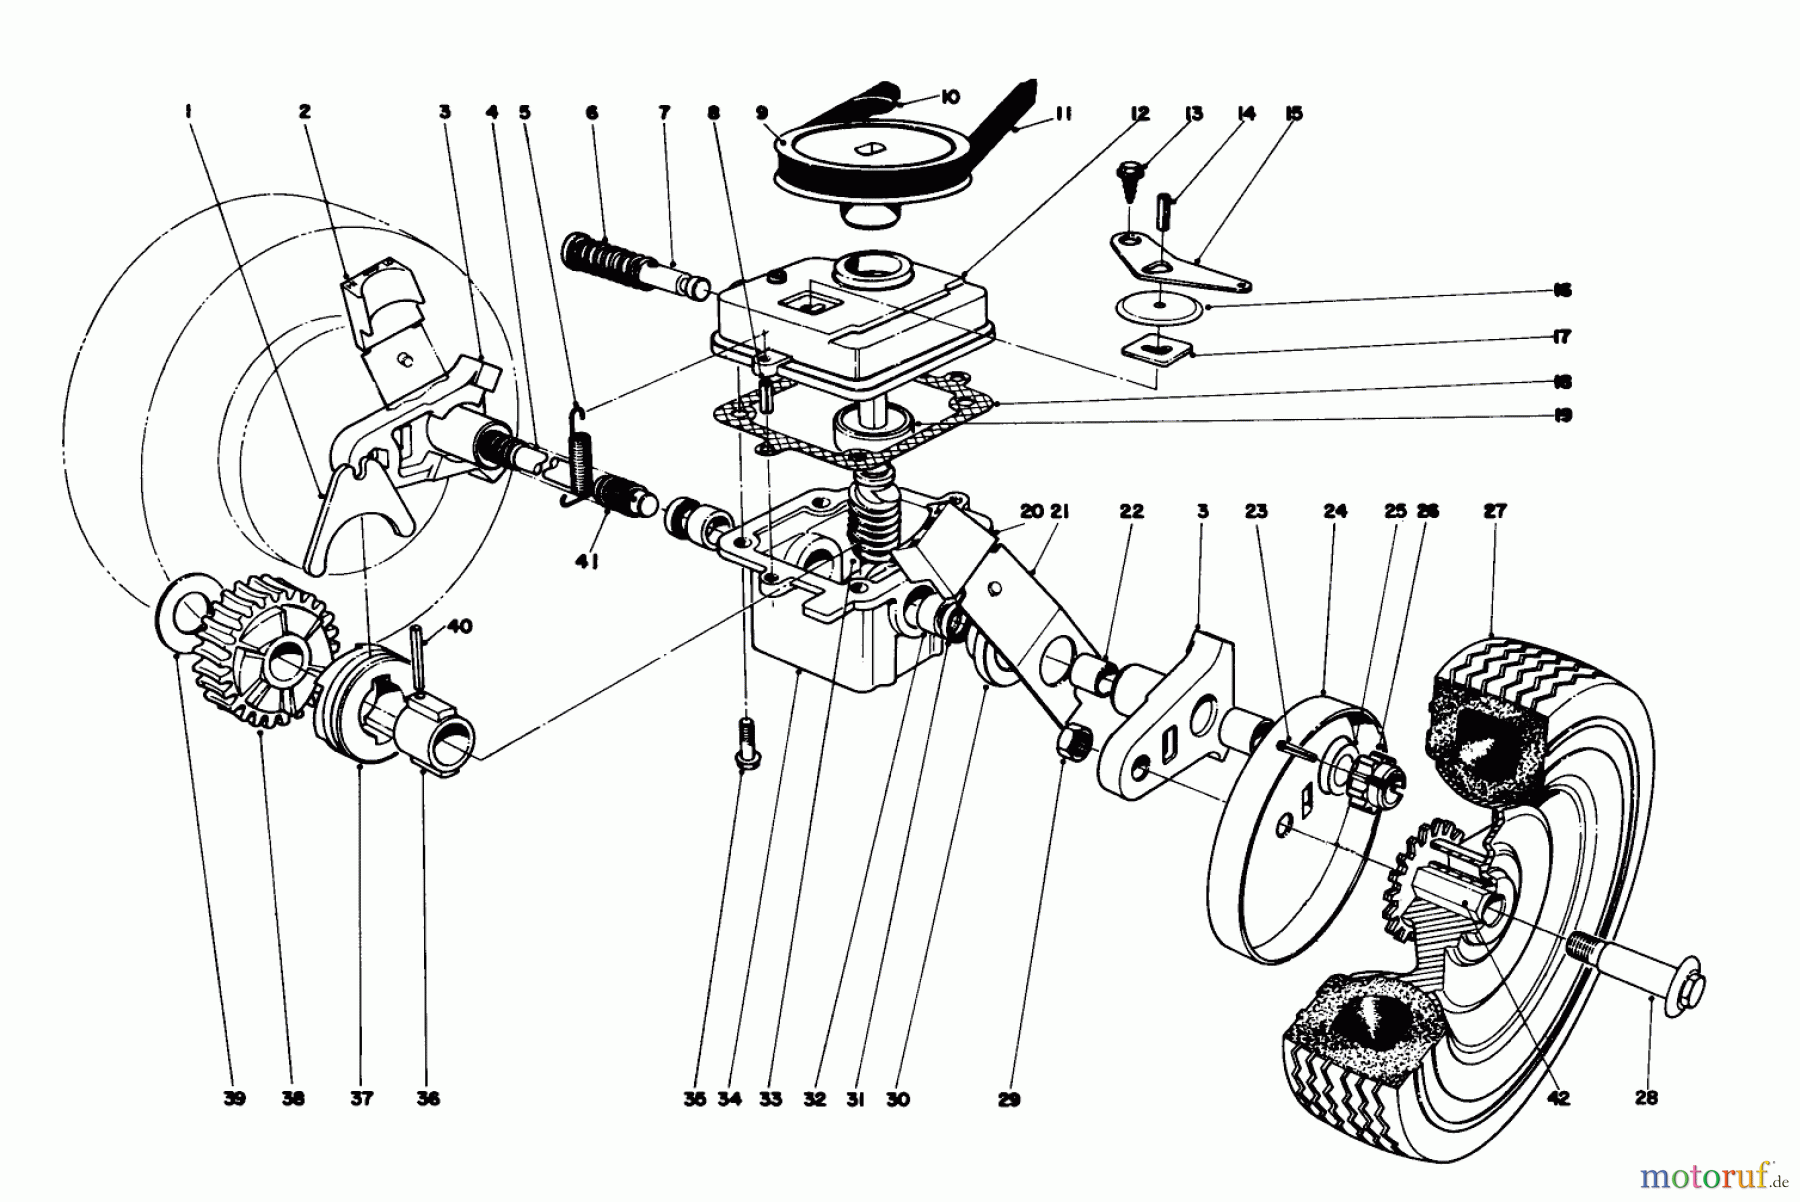  Toro Neu Mowers, Walk-Behind Seite 1 16173 - Toro Whirlwind Lawnmower, 1975 (5000001-5999999) GEAR BOX ASSEMBLY